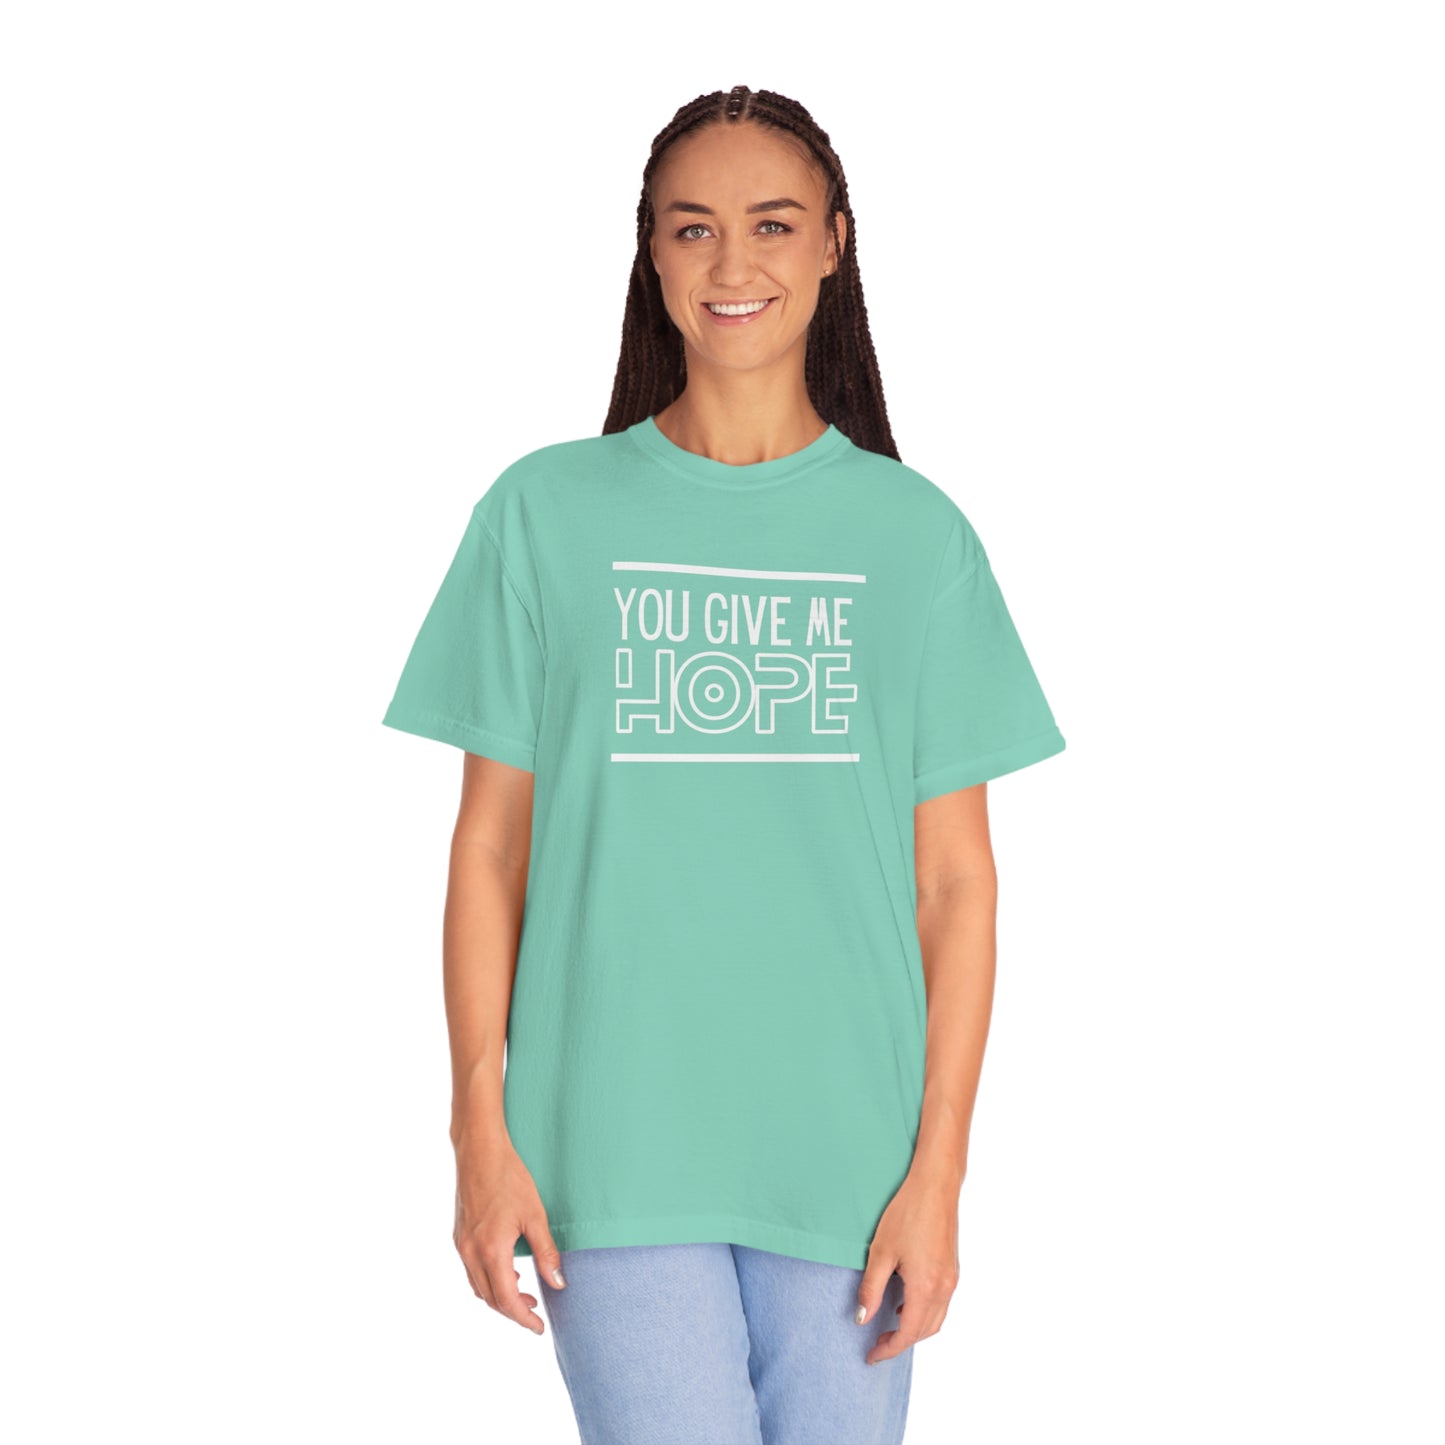 Hope T-shirt